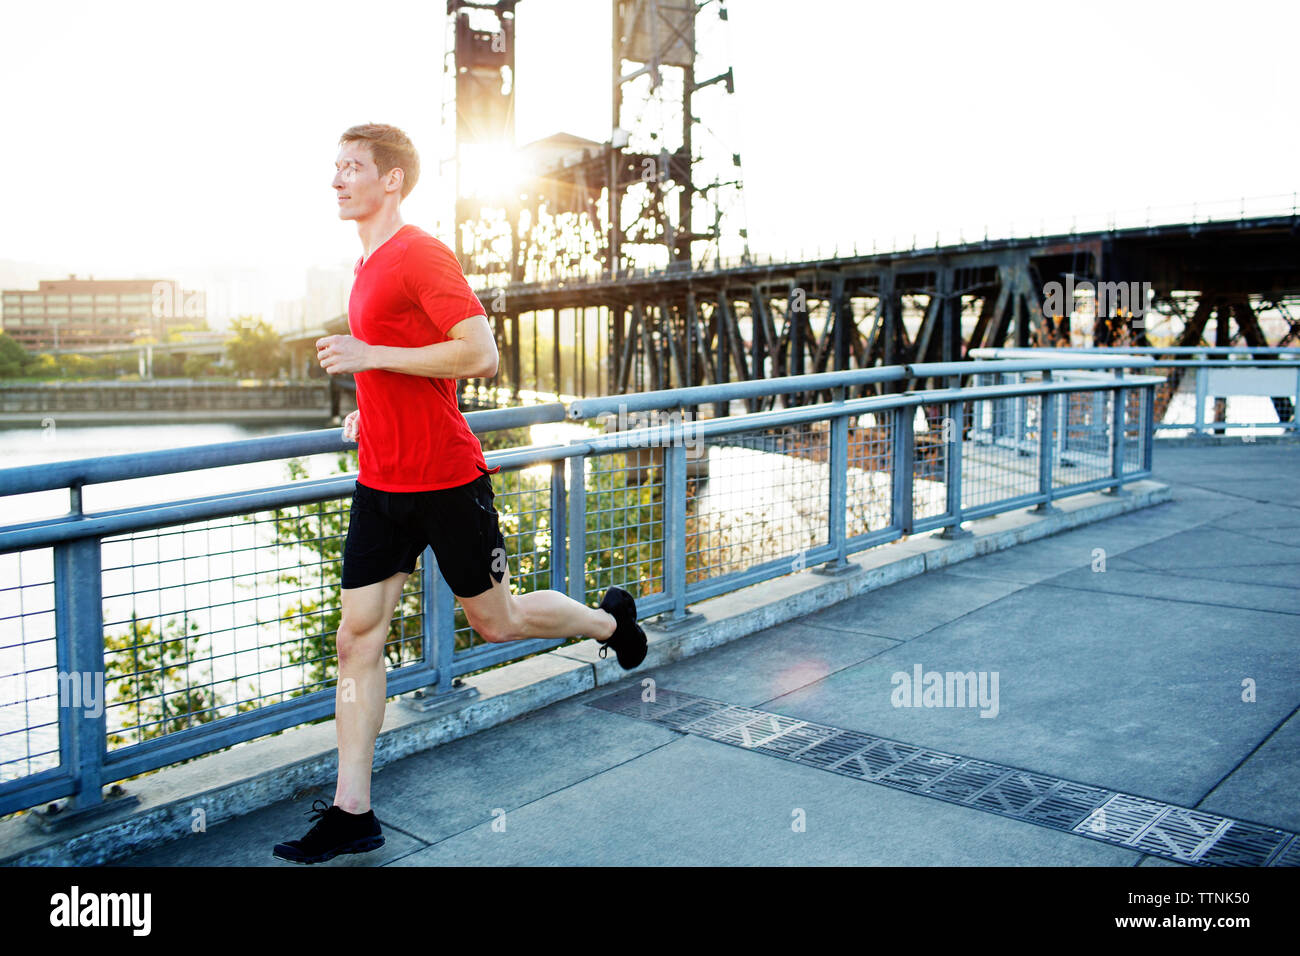 Vue latérale du man jogging on bridge contre ciel clair Banque D'Images